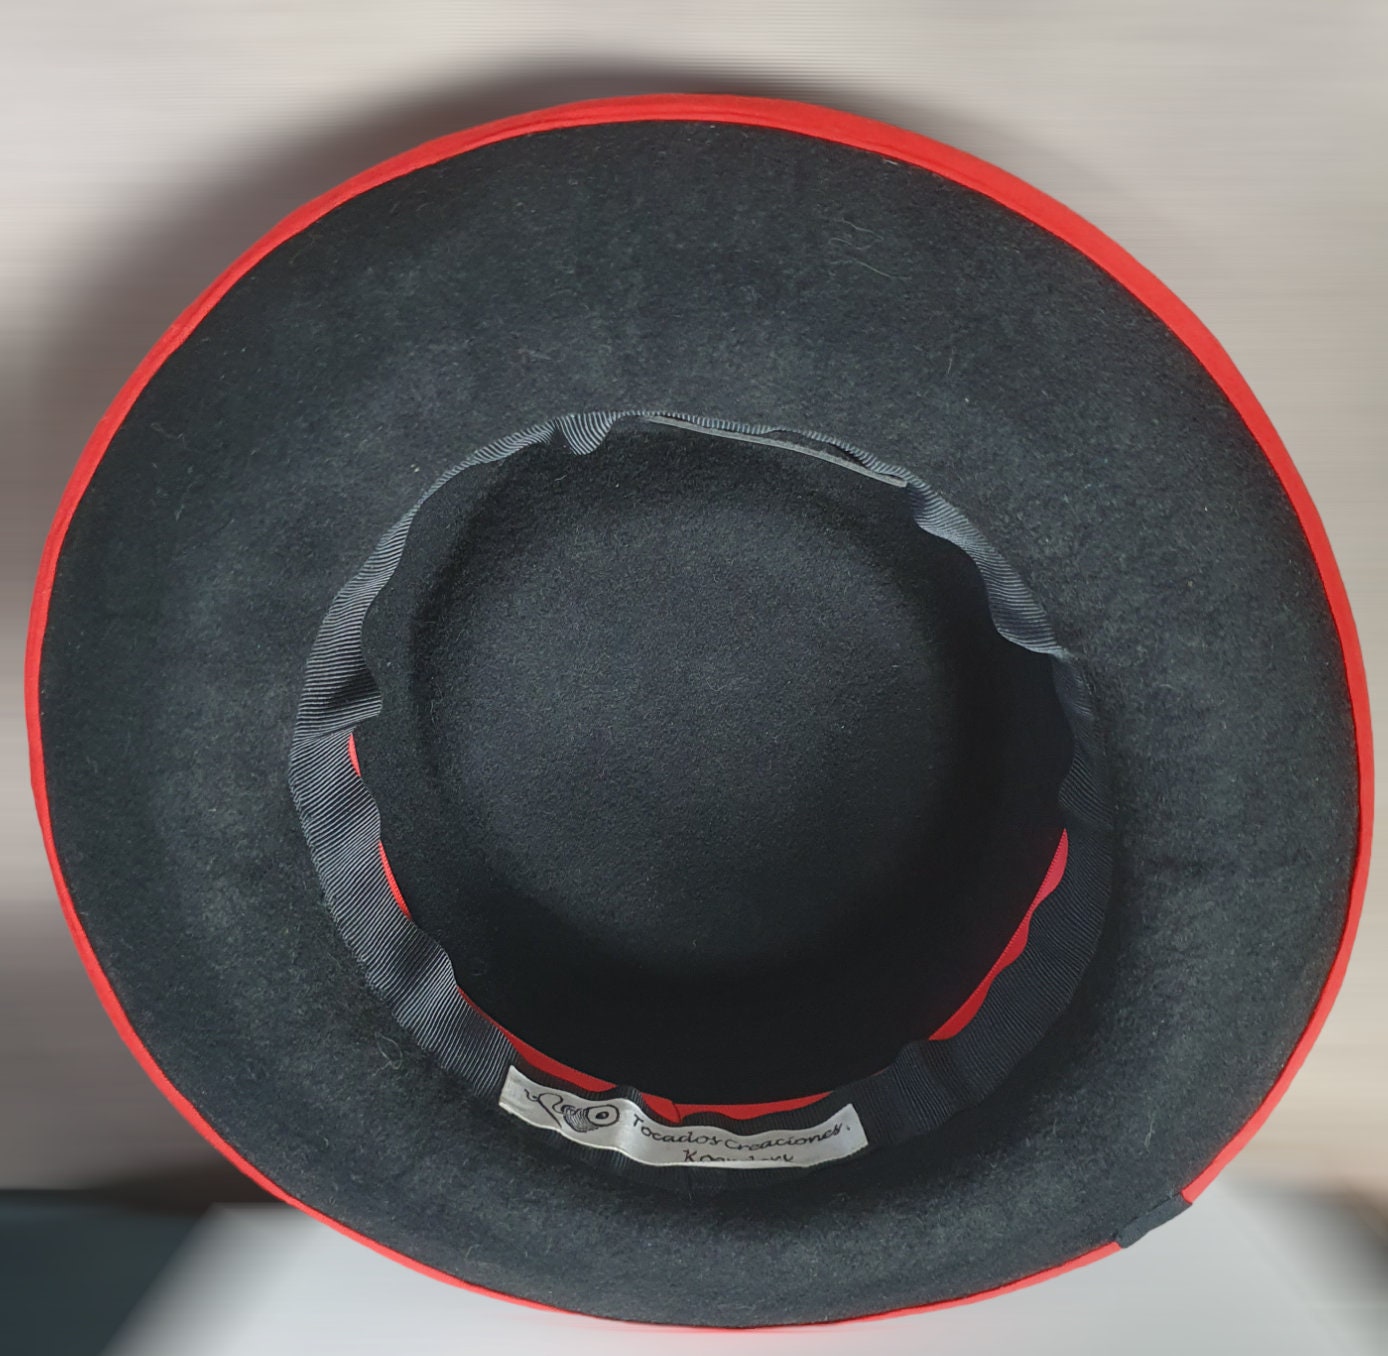 Sombrero de fieltro Trilby en color negro con rojo, único y hecho a mano con plumas de gallo - adecuado para primavera y ocasiones especiales - sombrero unisex